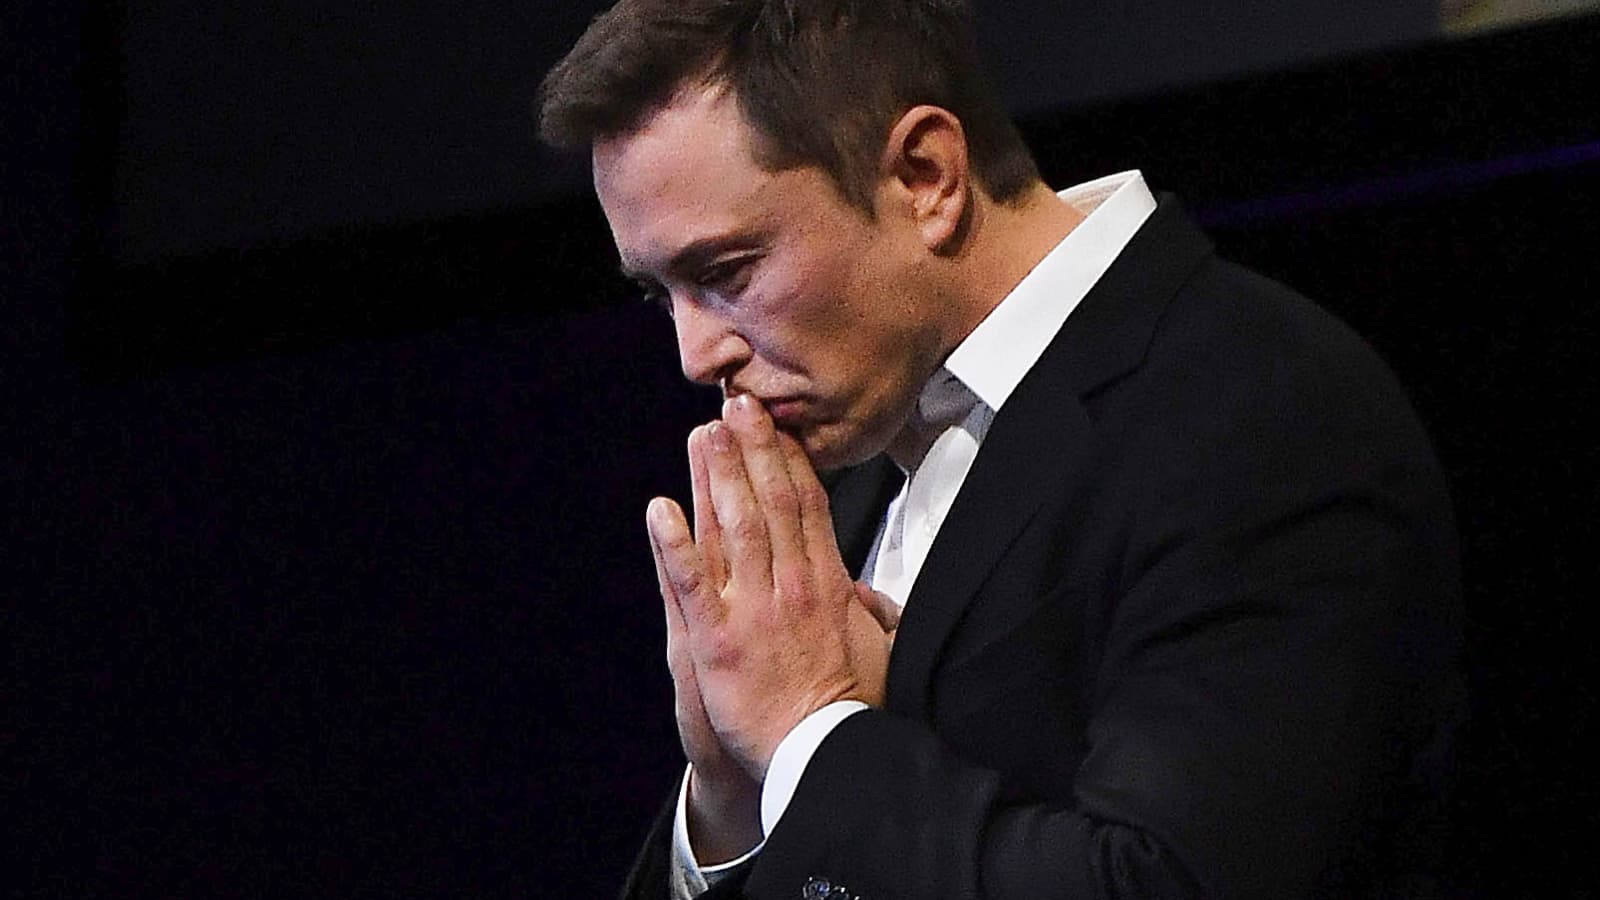 Tesla, Elon Musk